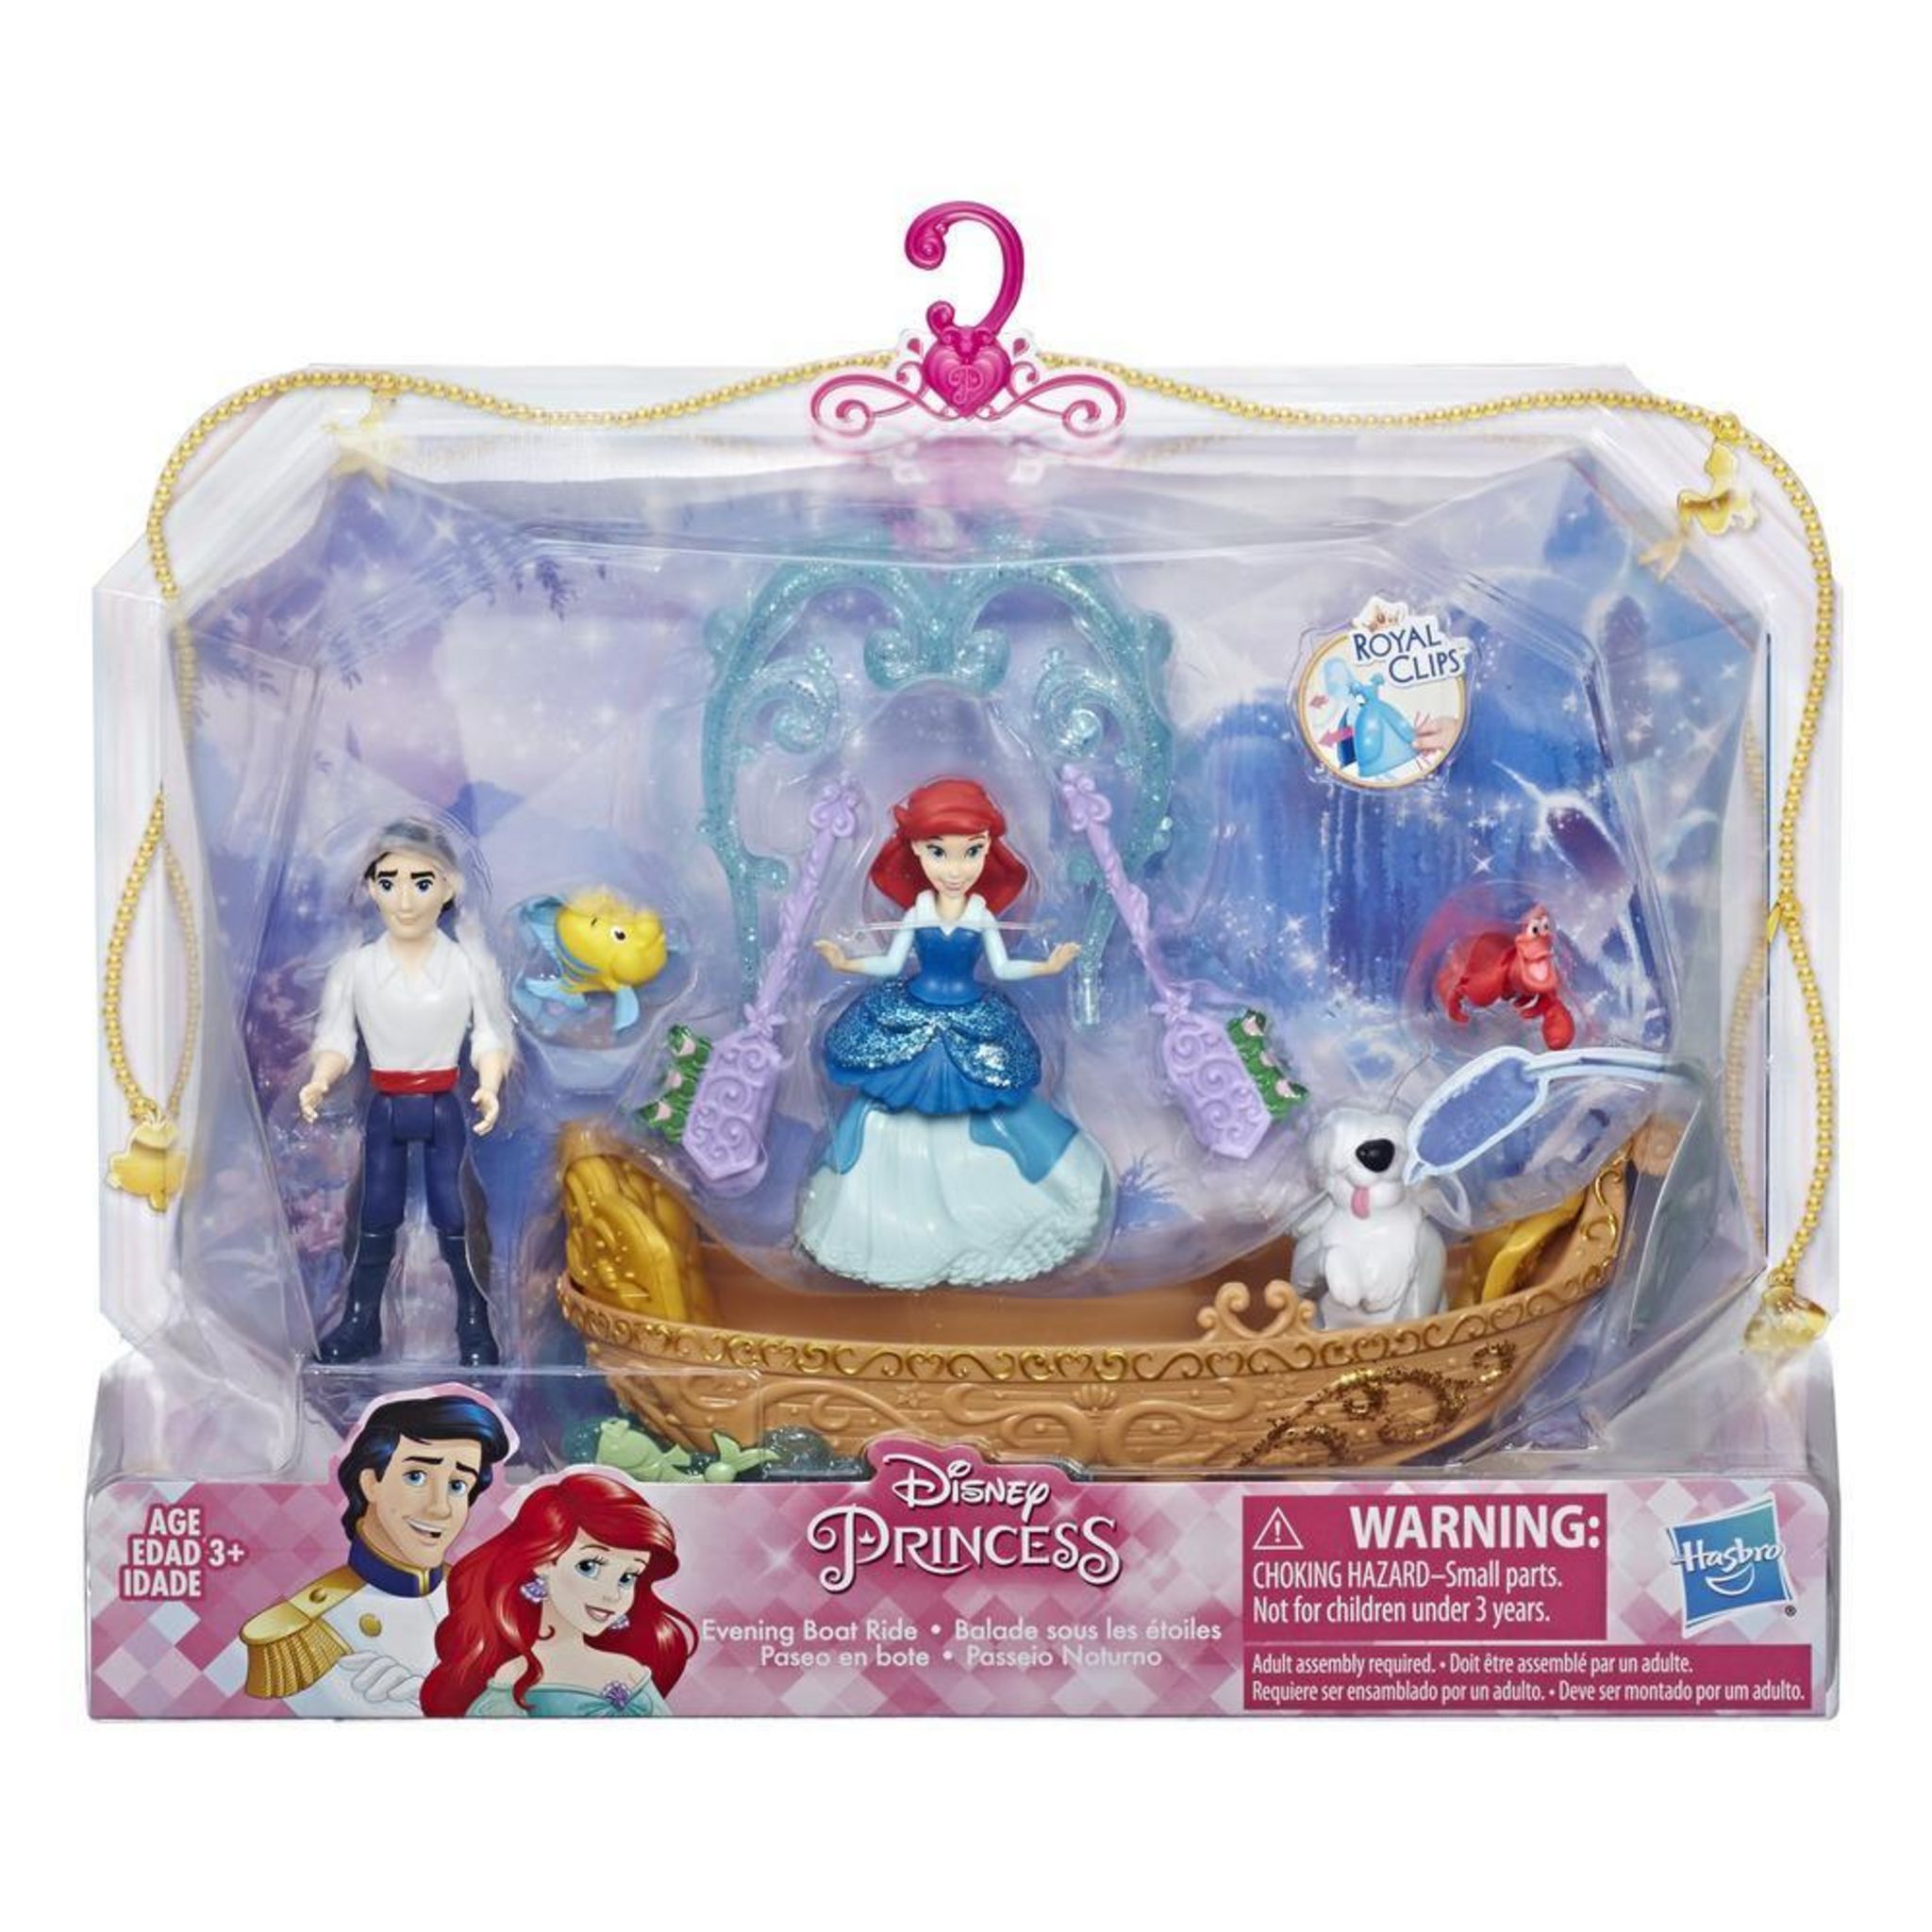 Ensemble de figurines de princesses Disney pour enfants, jouets